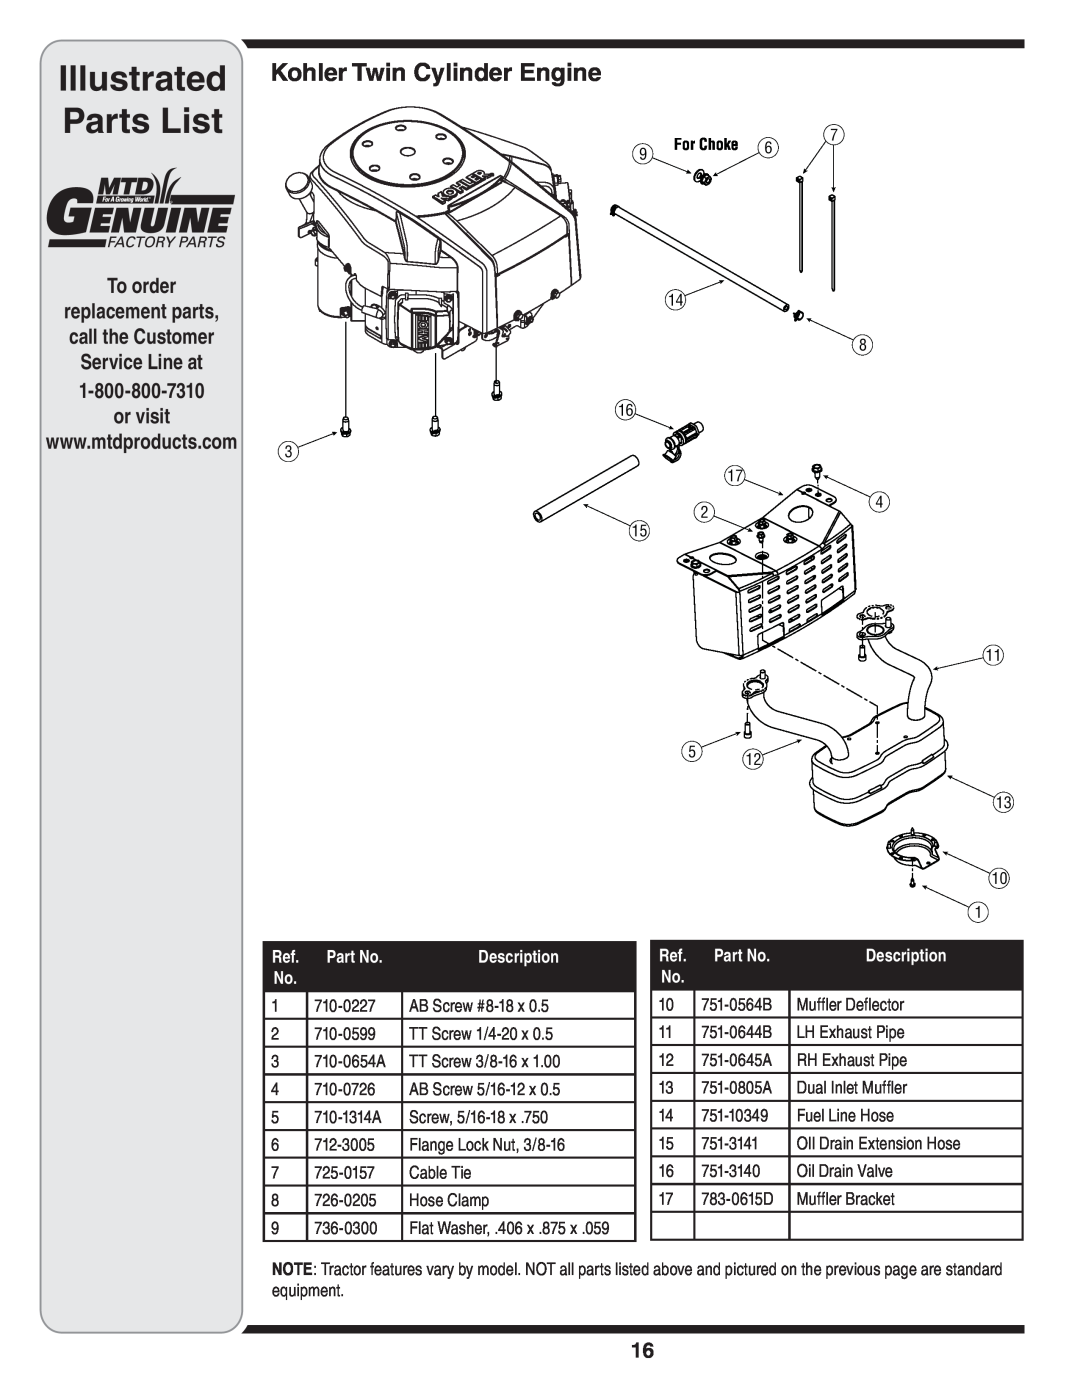 MTD 620 manual Illustrated, Parts List, or visit, Kohler Twin Cylinder Engine, Part No 